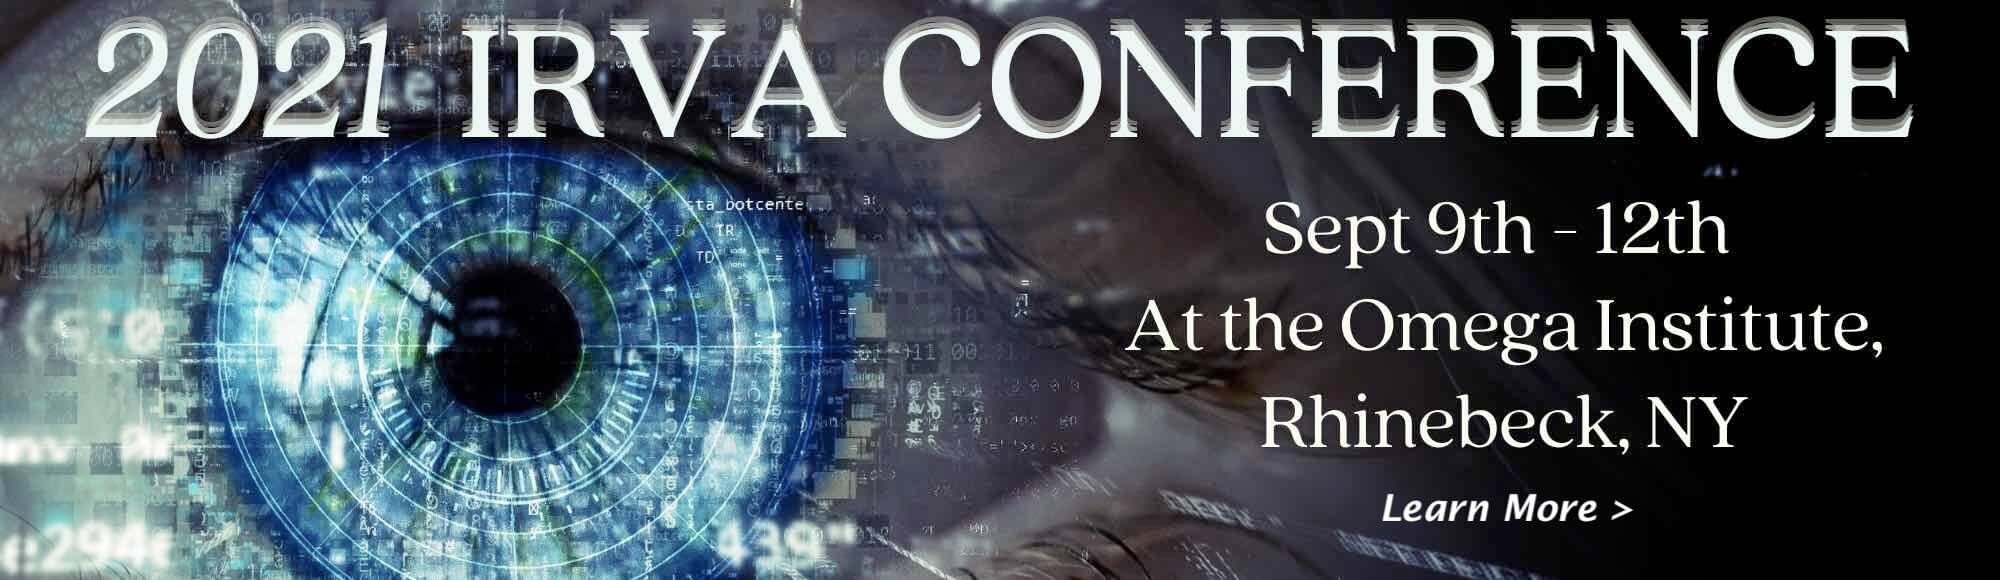 IRVA Conference